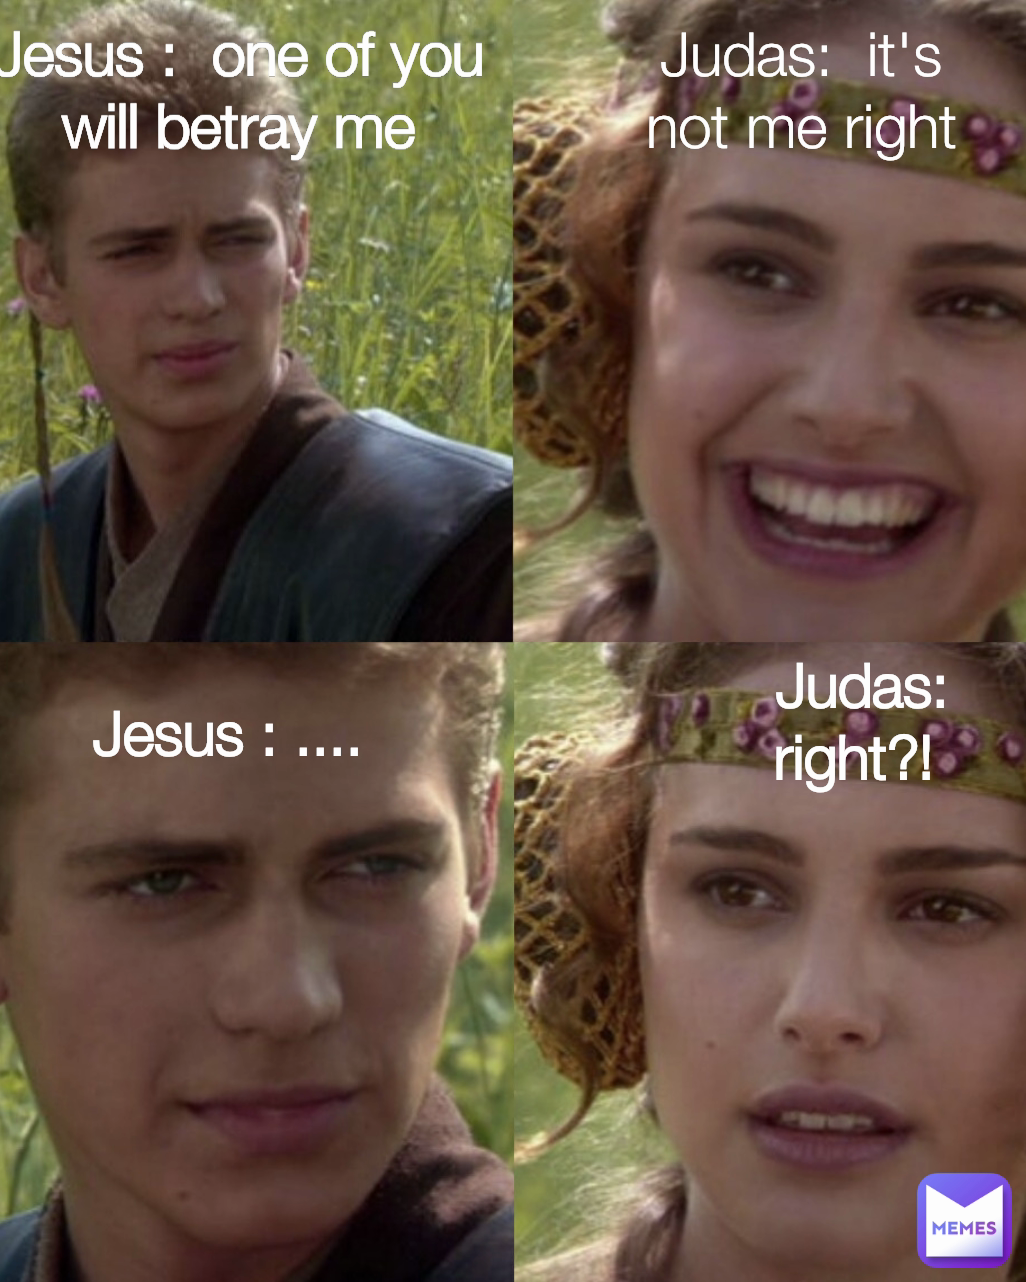 Judas:  it's not me right Jesus : ....  Jesus :  one of you will betray me Judas:  right?! 